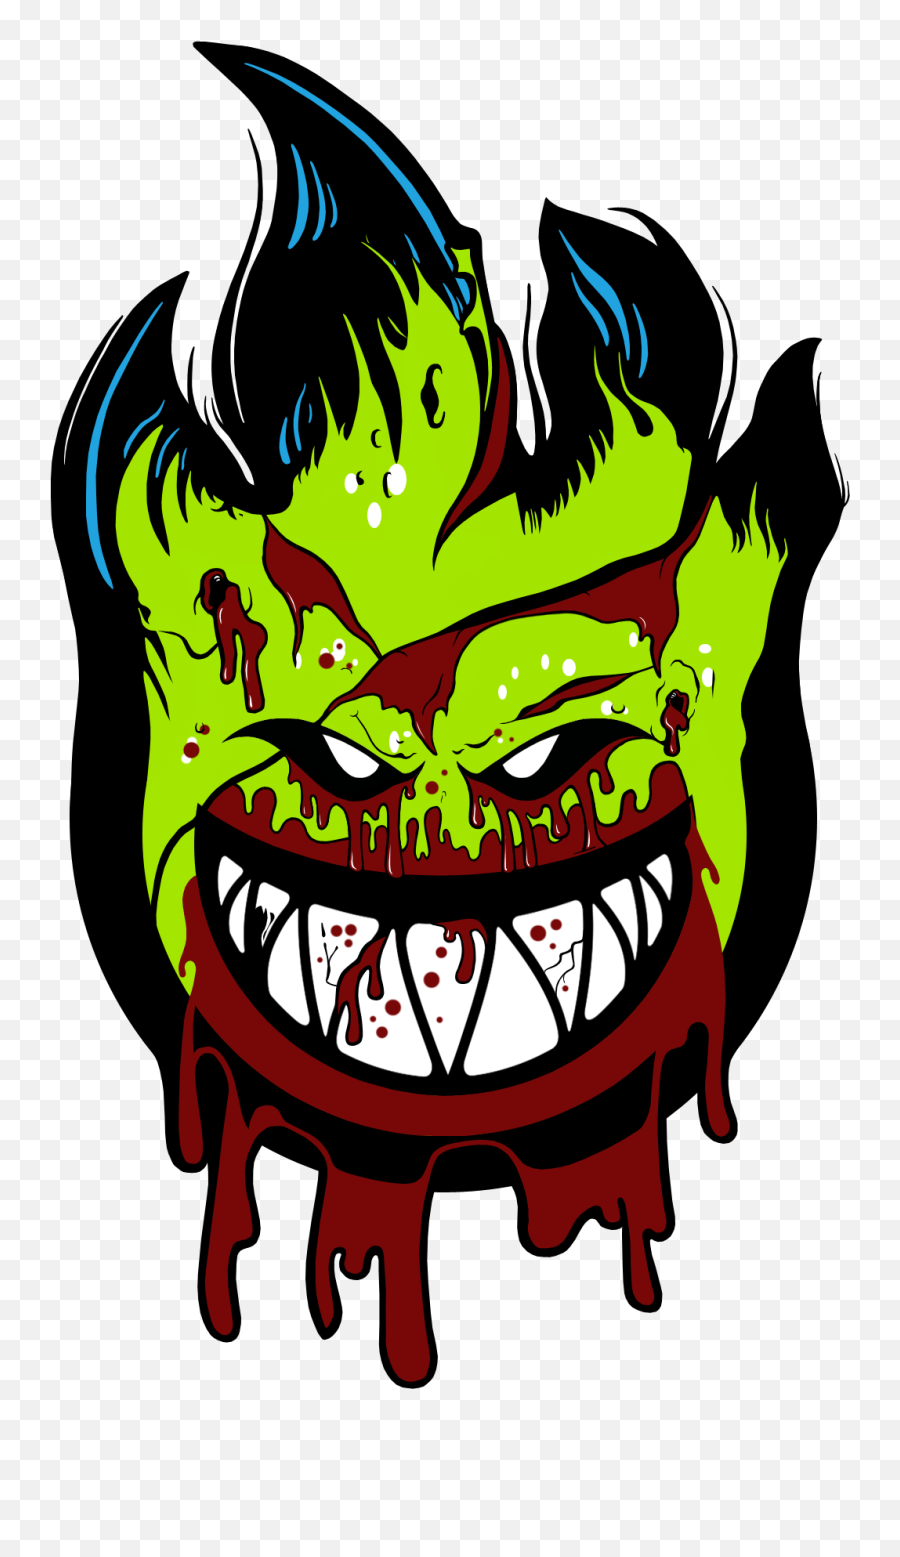 Desenhos De Palhacos Assassino - Skate Spitfire Logo Emoji,Emoticon Assassino